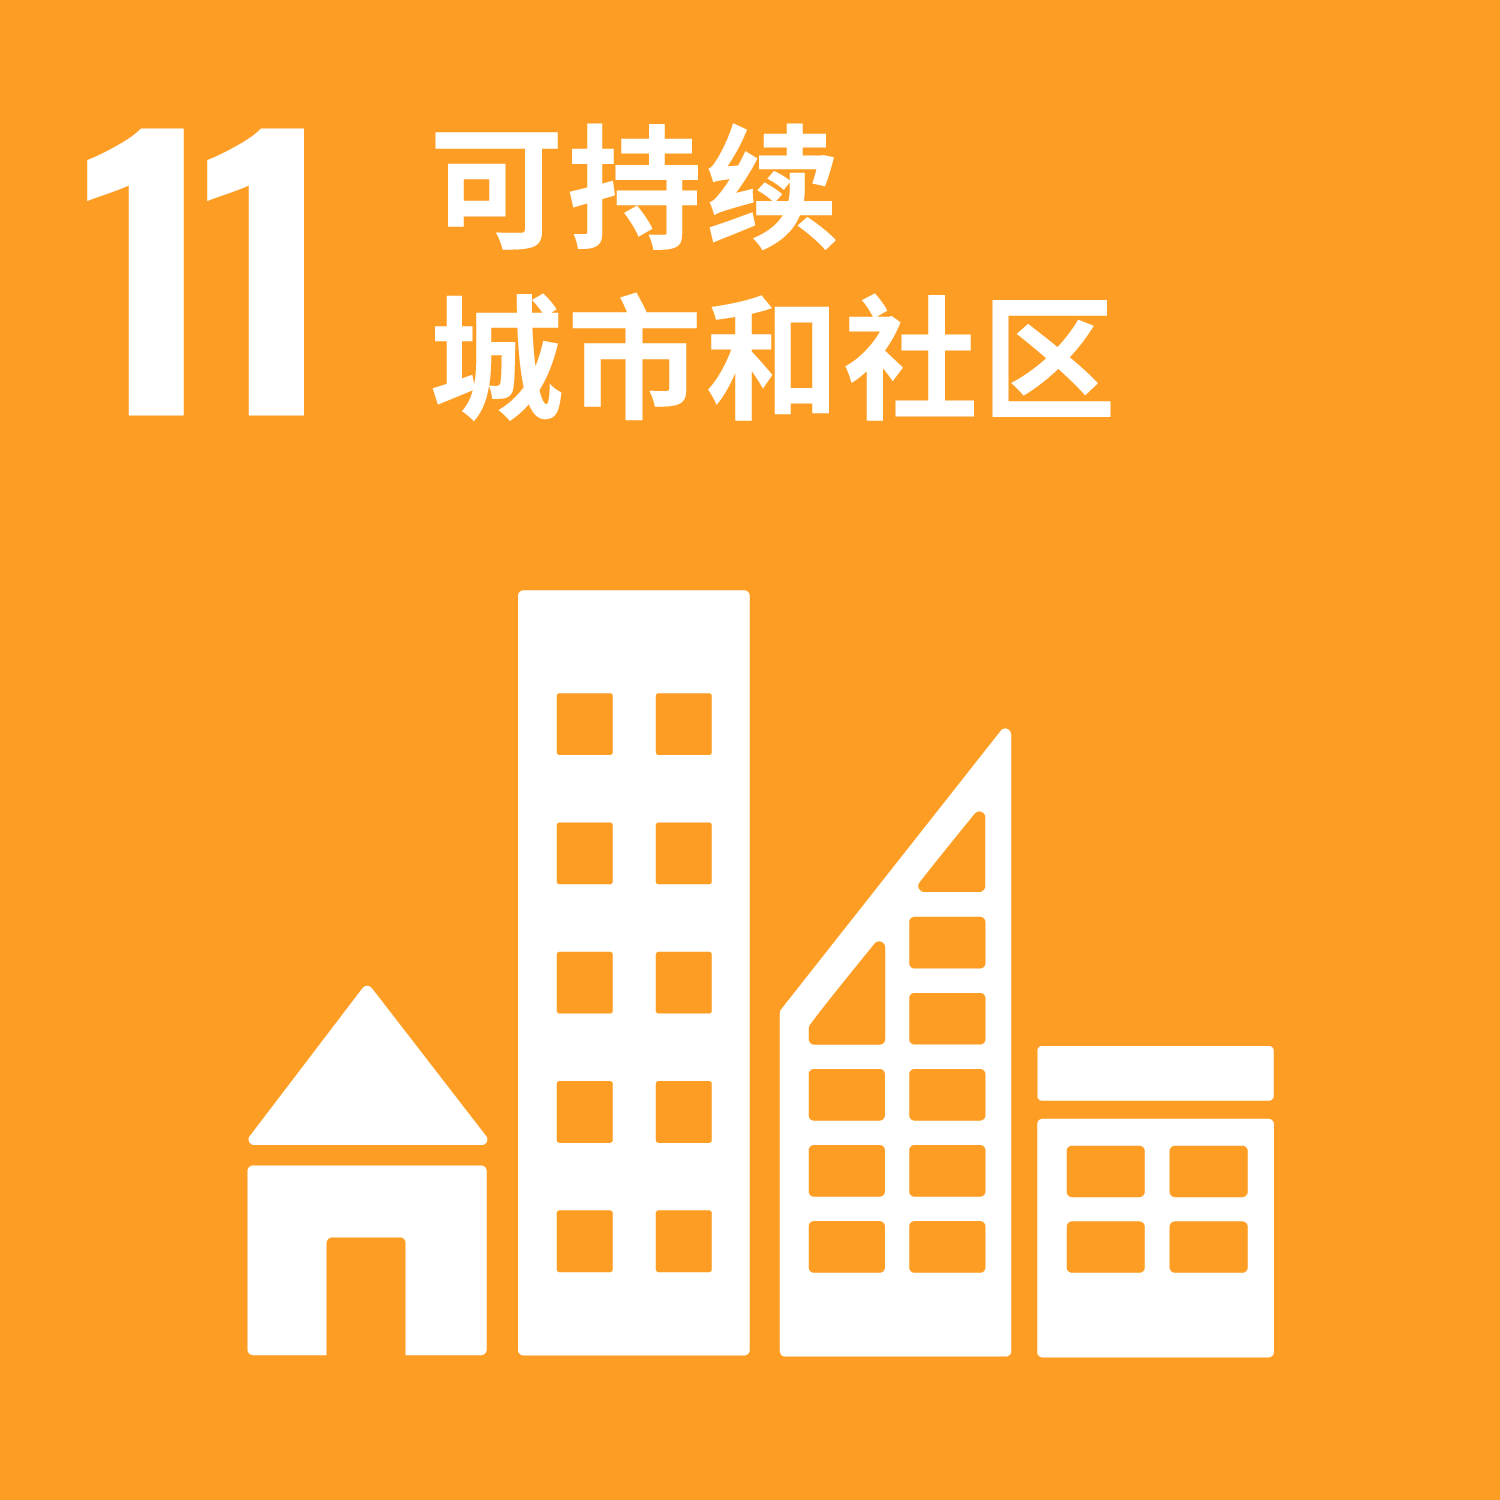 #11 可持续城市和社区